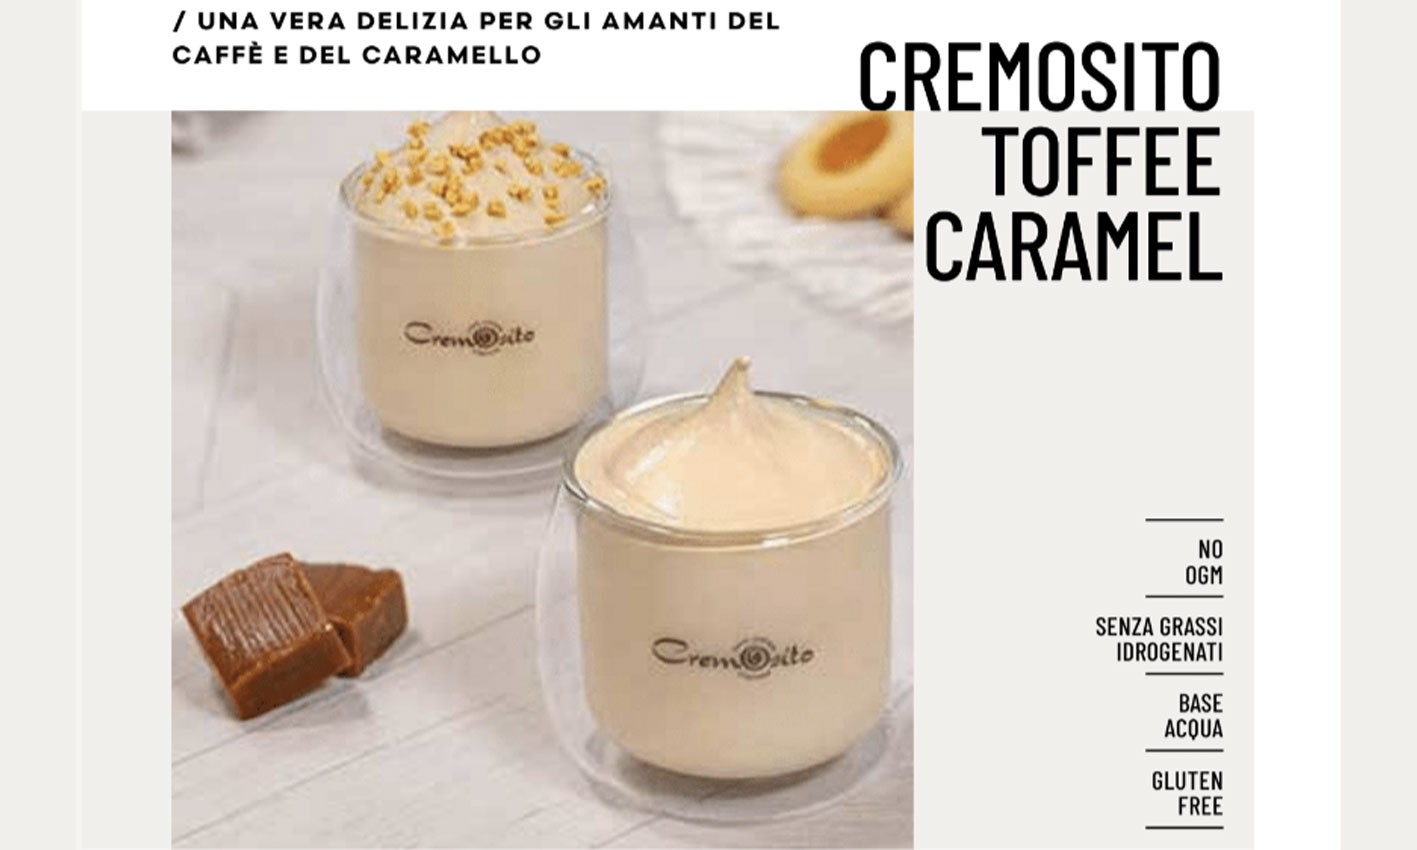 La nouvelle crème froide au café Cremosito caramel toffee